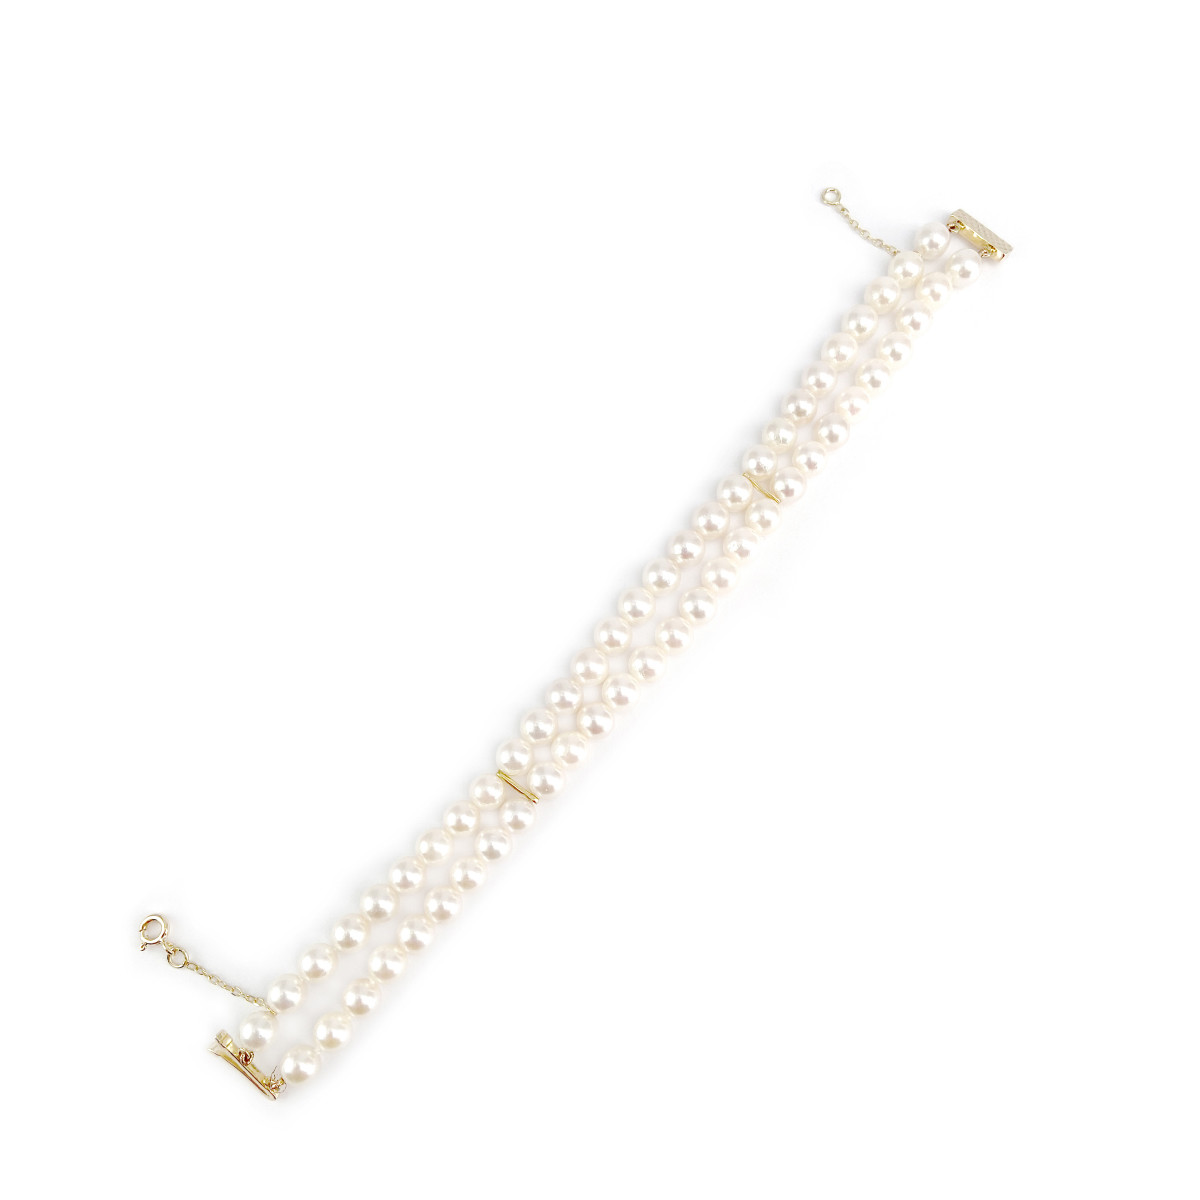 Bracelet d'occasion or 750 jaune perles de culture du Japon 18 cm - vue 2